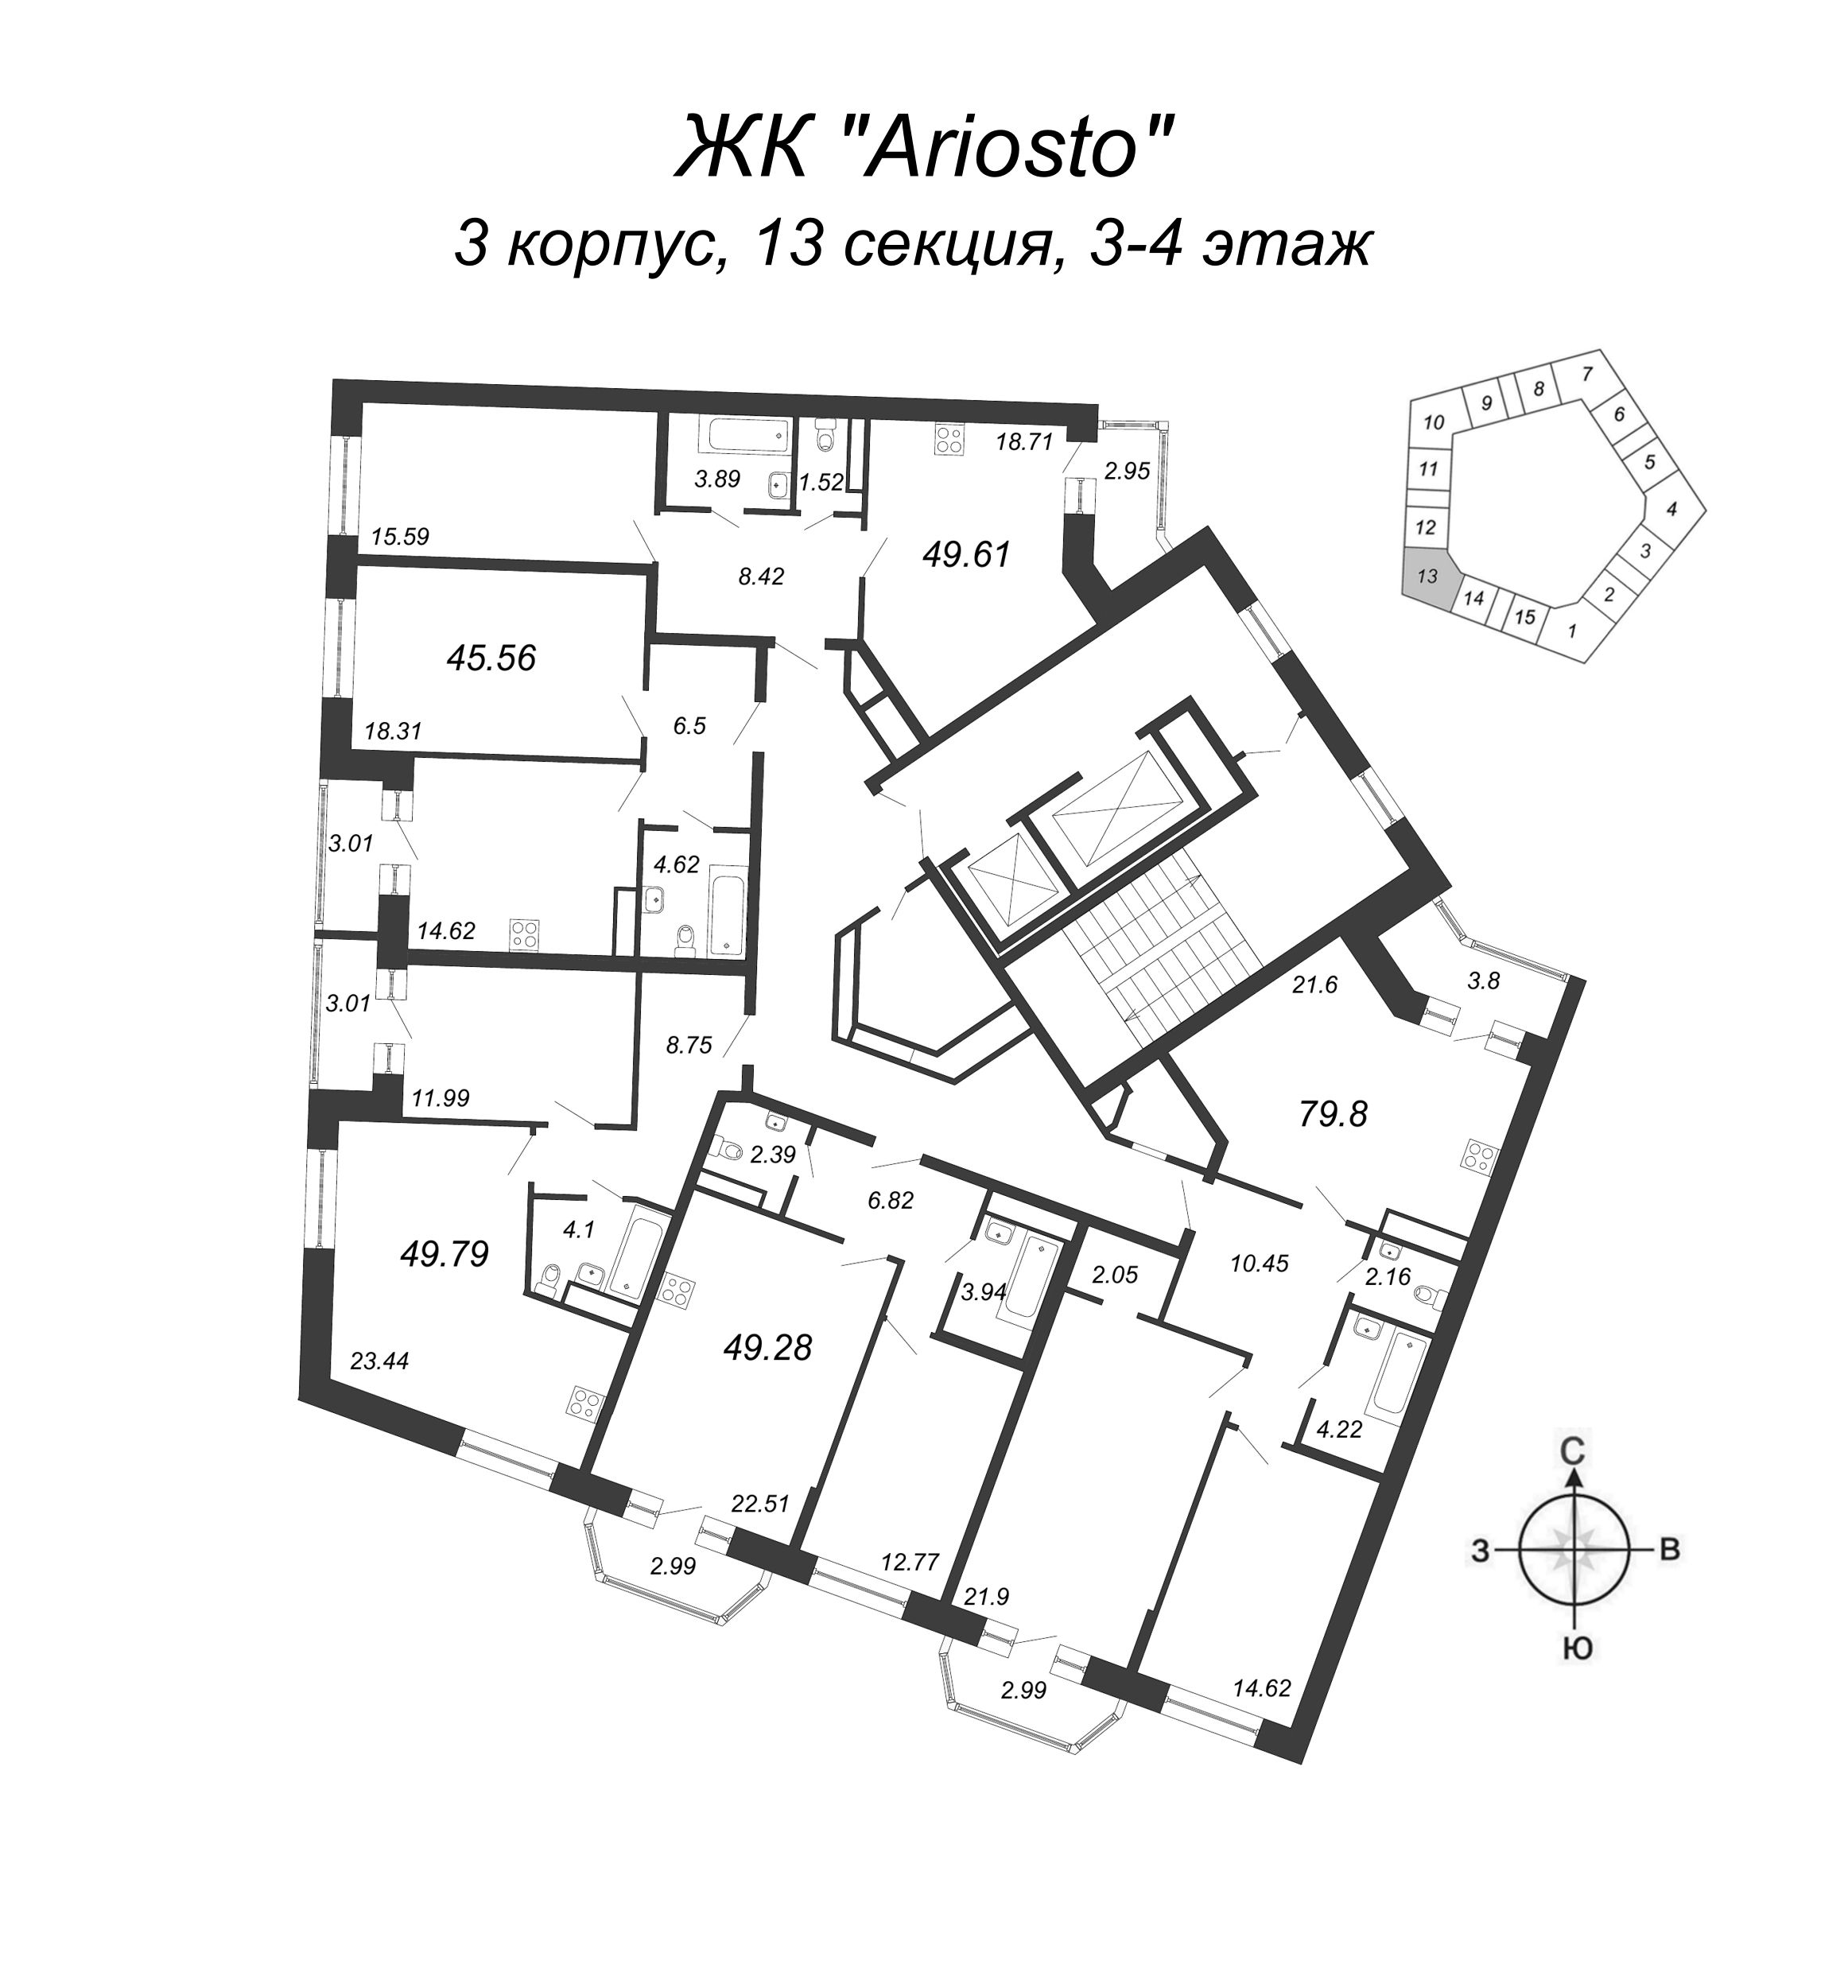 3-комнатная (Евро) квартира, 79.8 м² в ЖК "Ariosto" - планировка этажа